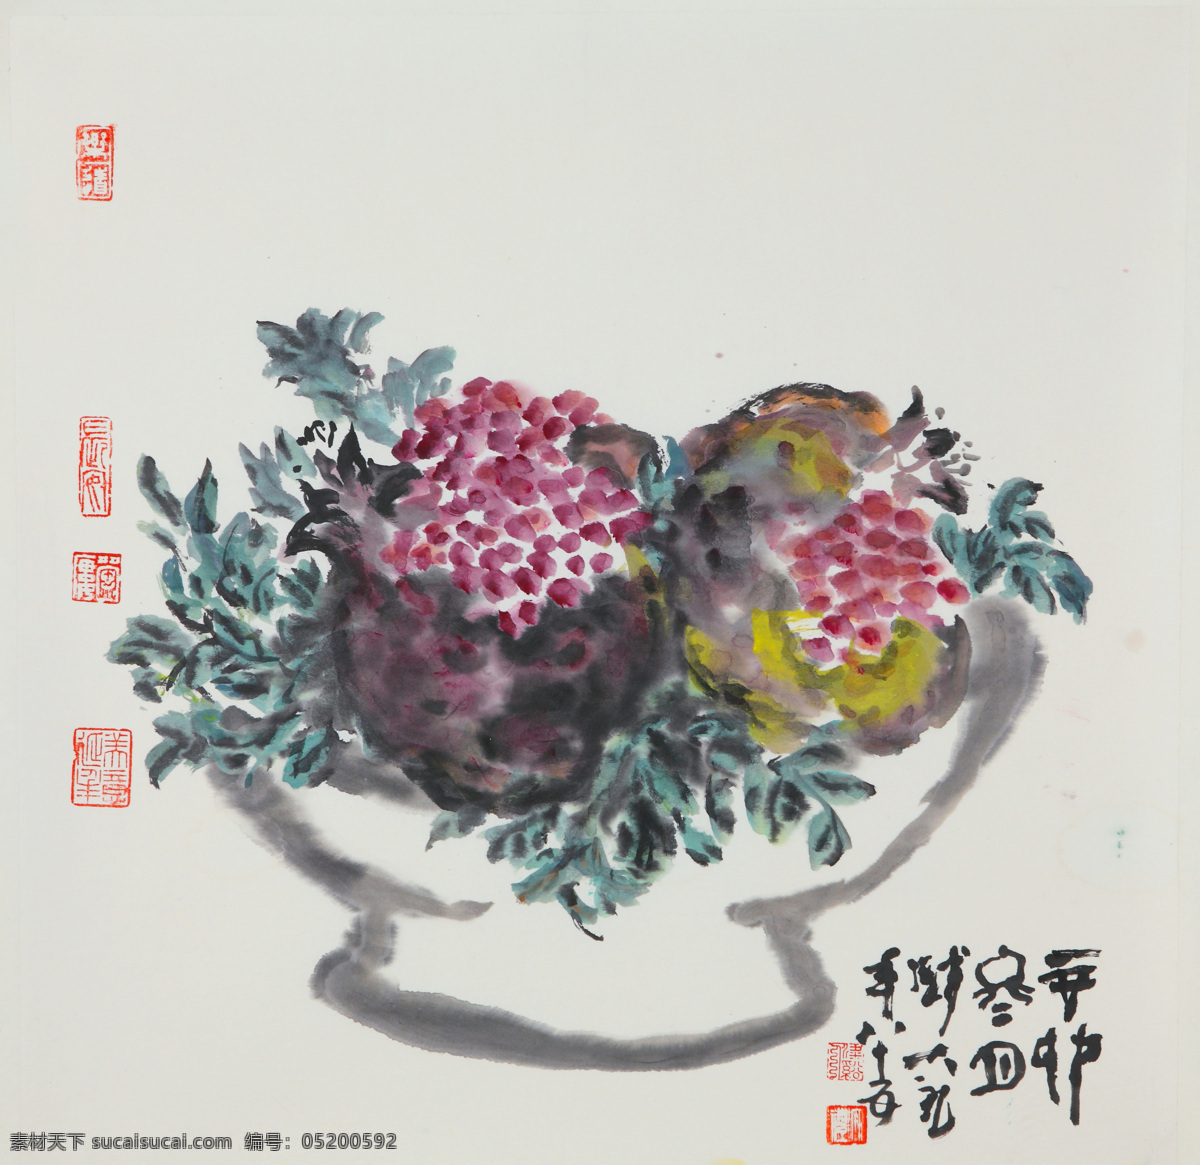 多子 多福 刺绣 石榴 室内装饰设计 中国画 写意瓜果画 钱大礼作品 工艺美术 平面广告 装饰设计 文化艺术